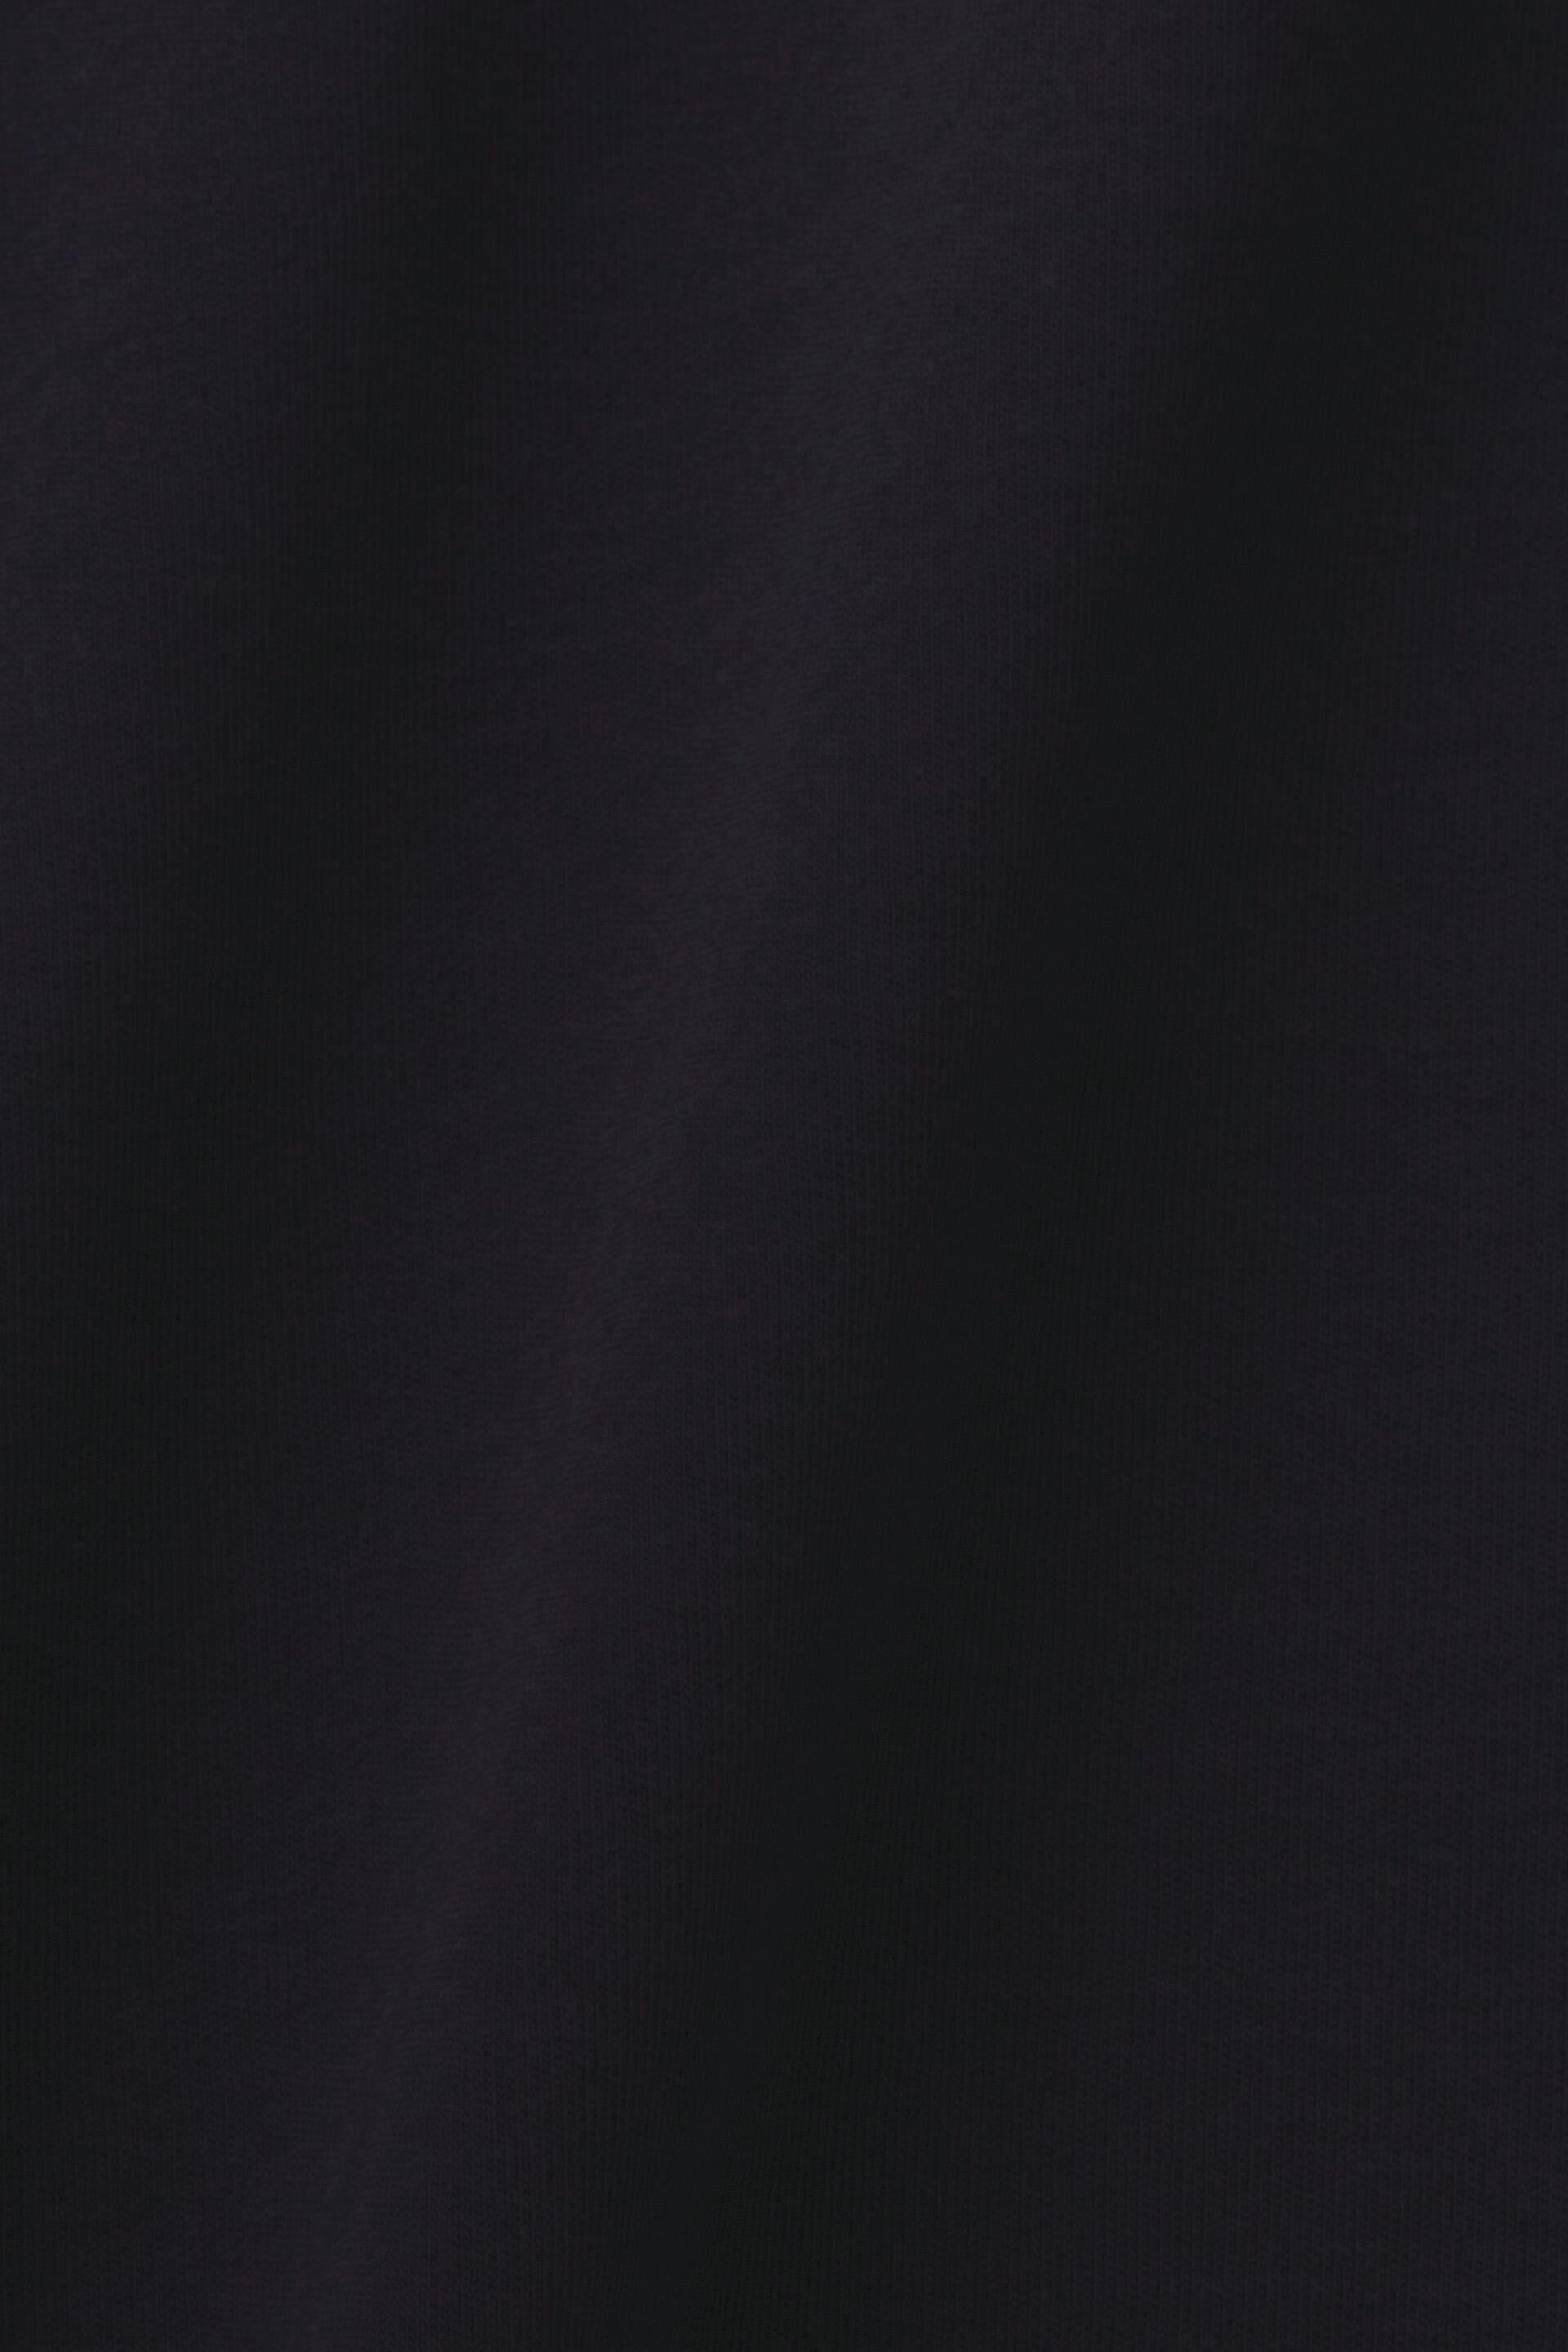 Esprit Baumwolle Rundhalsausschnitt, % mit 100 T-Shirt